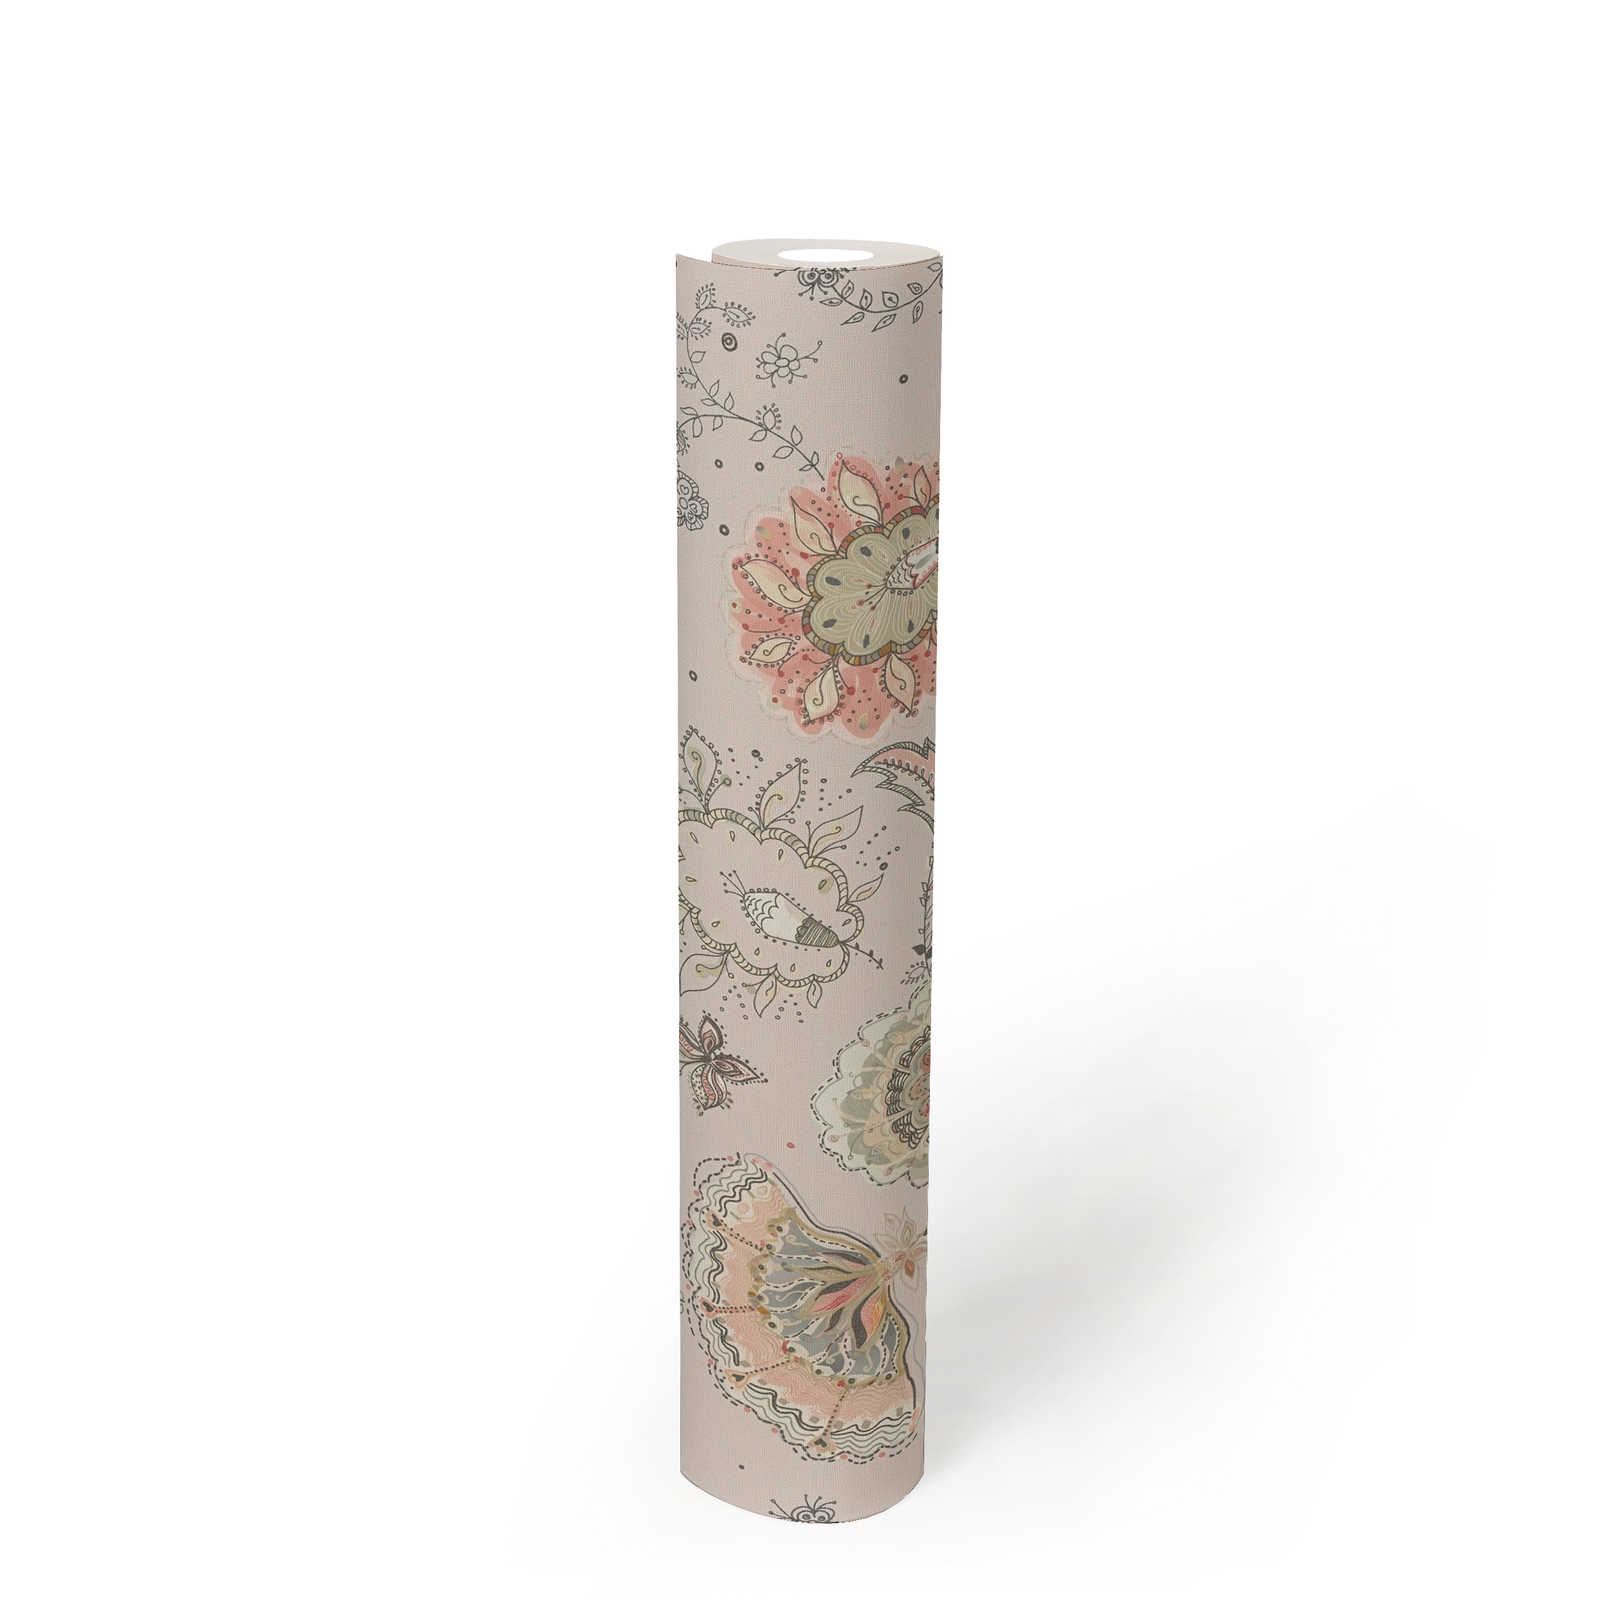             Florale Tapete mit abstraktem Blumenmuster & feinen Struktur – Grau, Beige, Rot
        